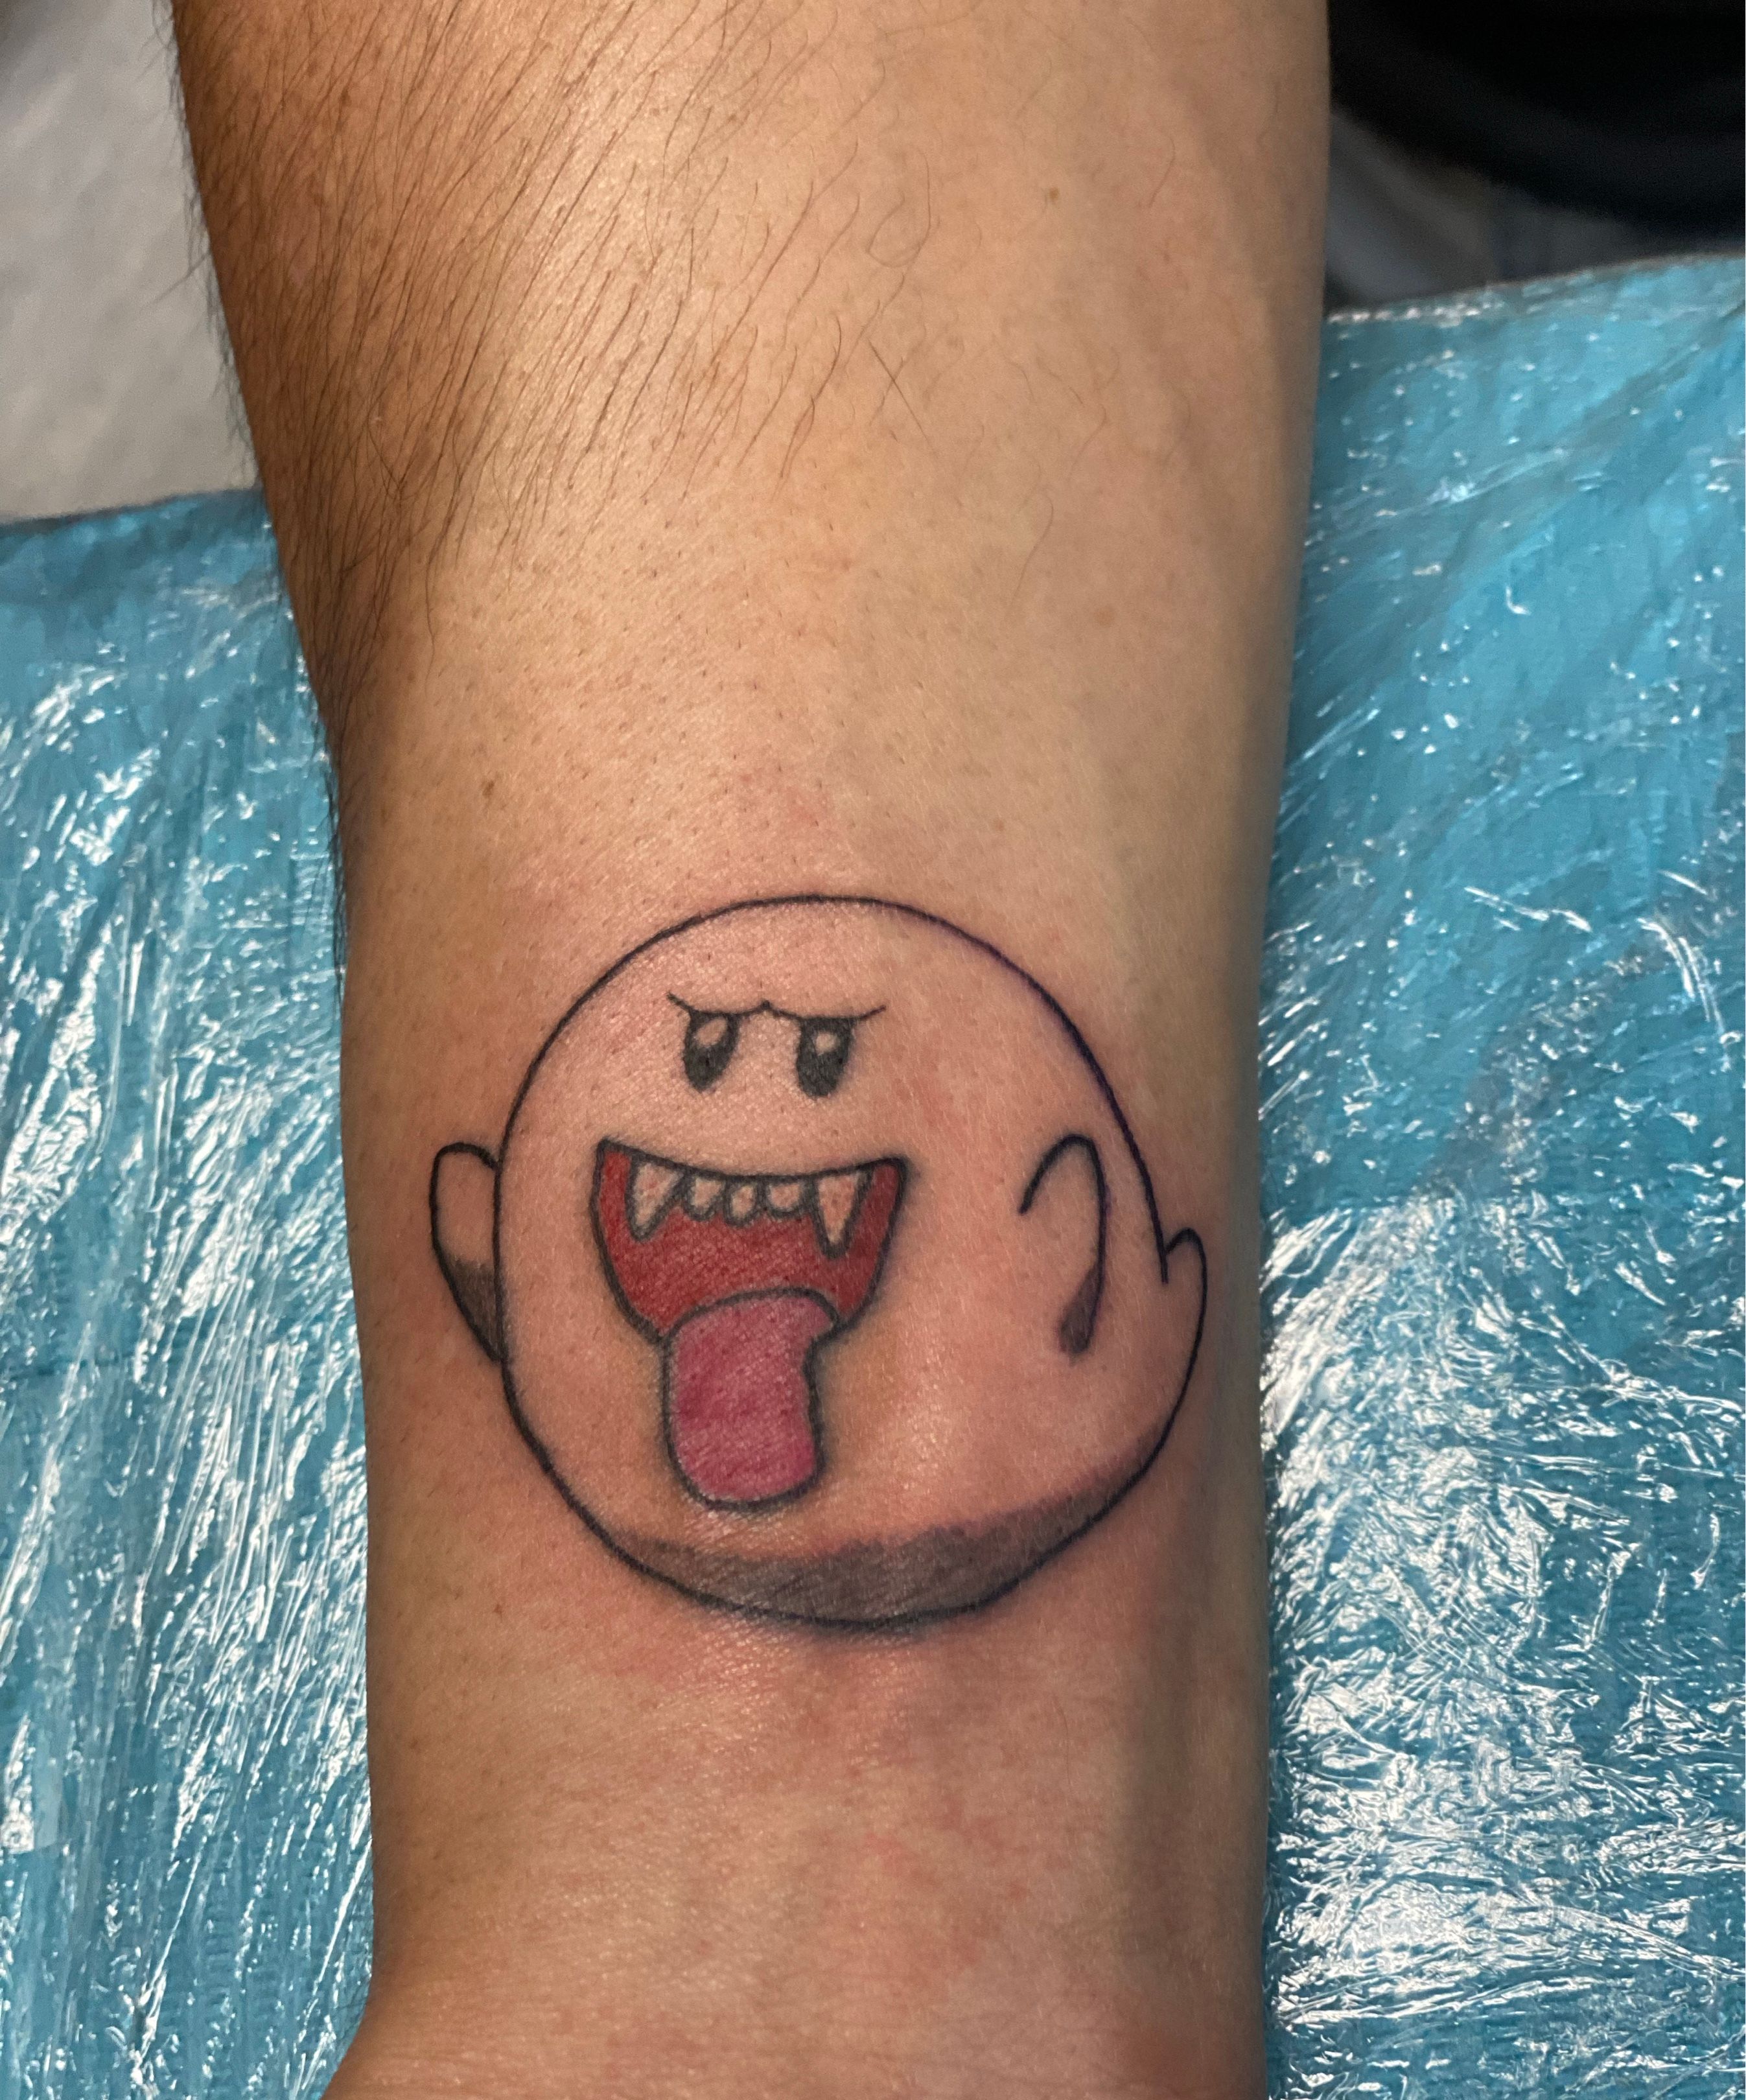 Boo tattoo a few days ago : r/Mario